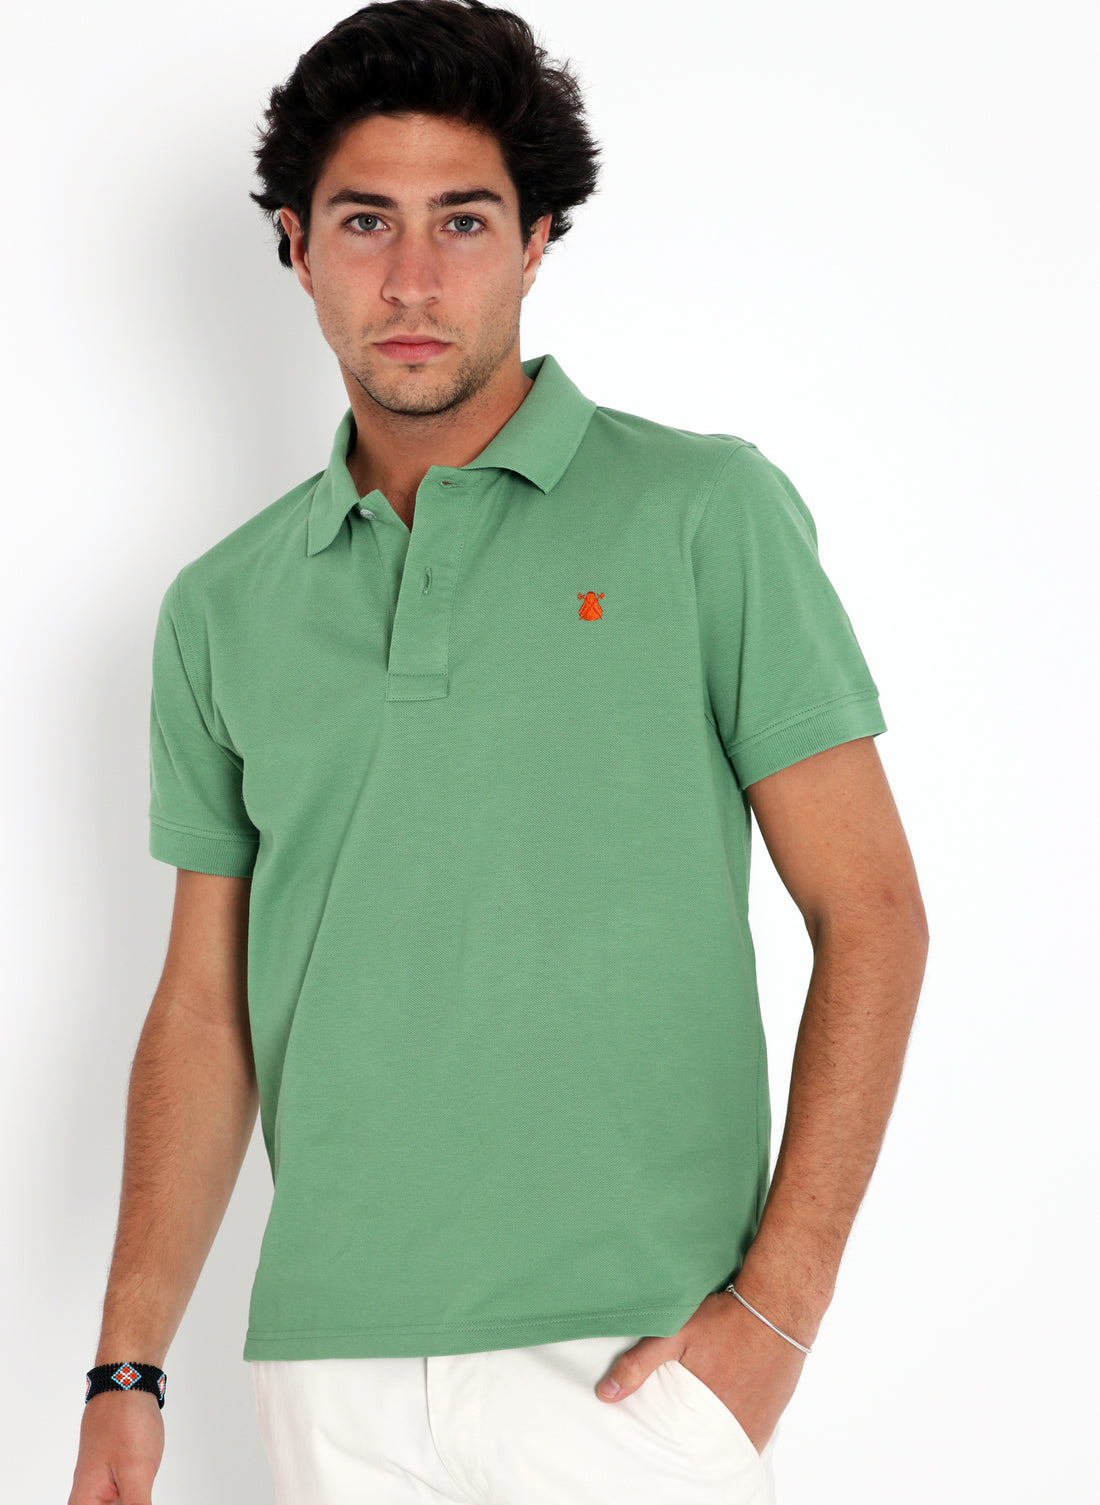 Men's Classic Green Hope Polo Shirt